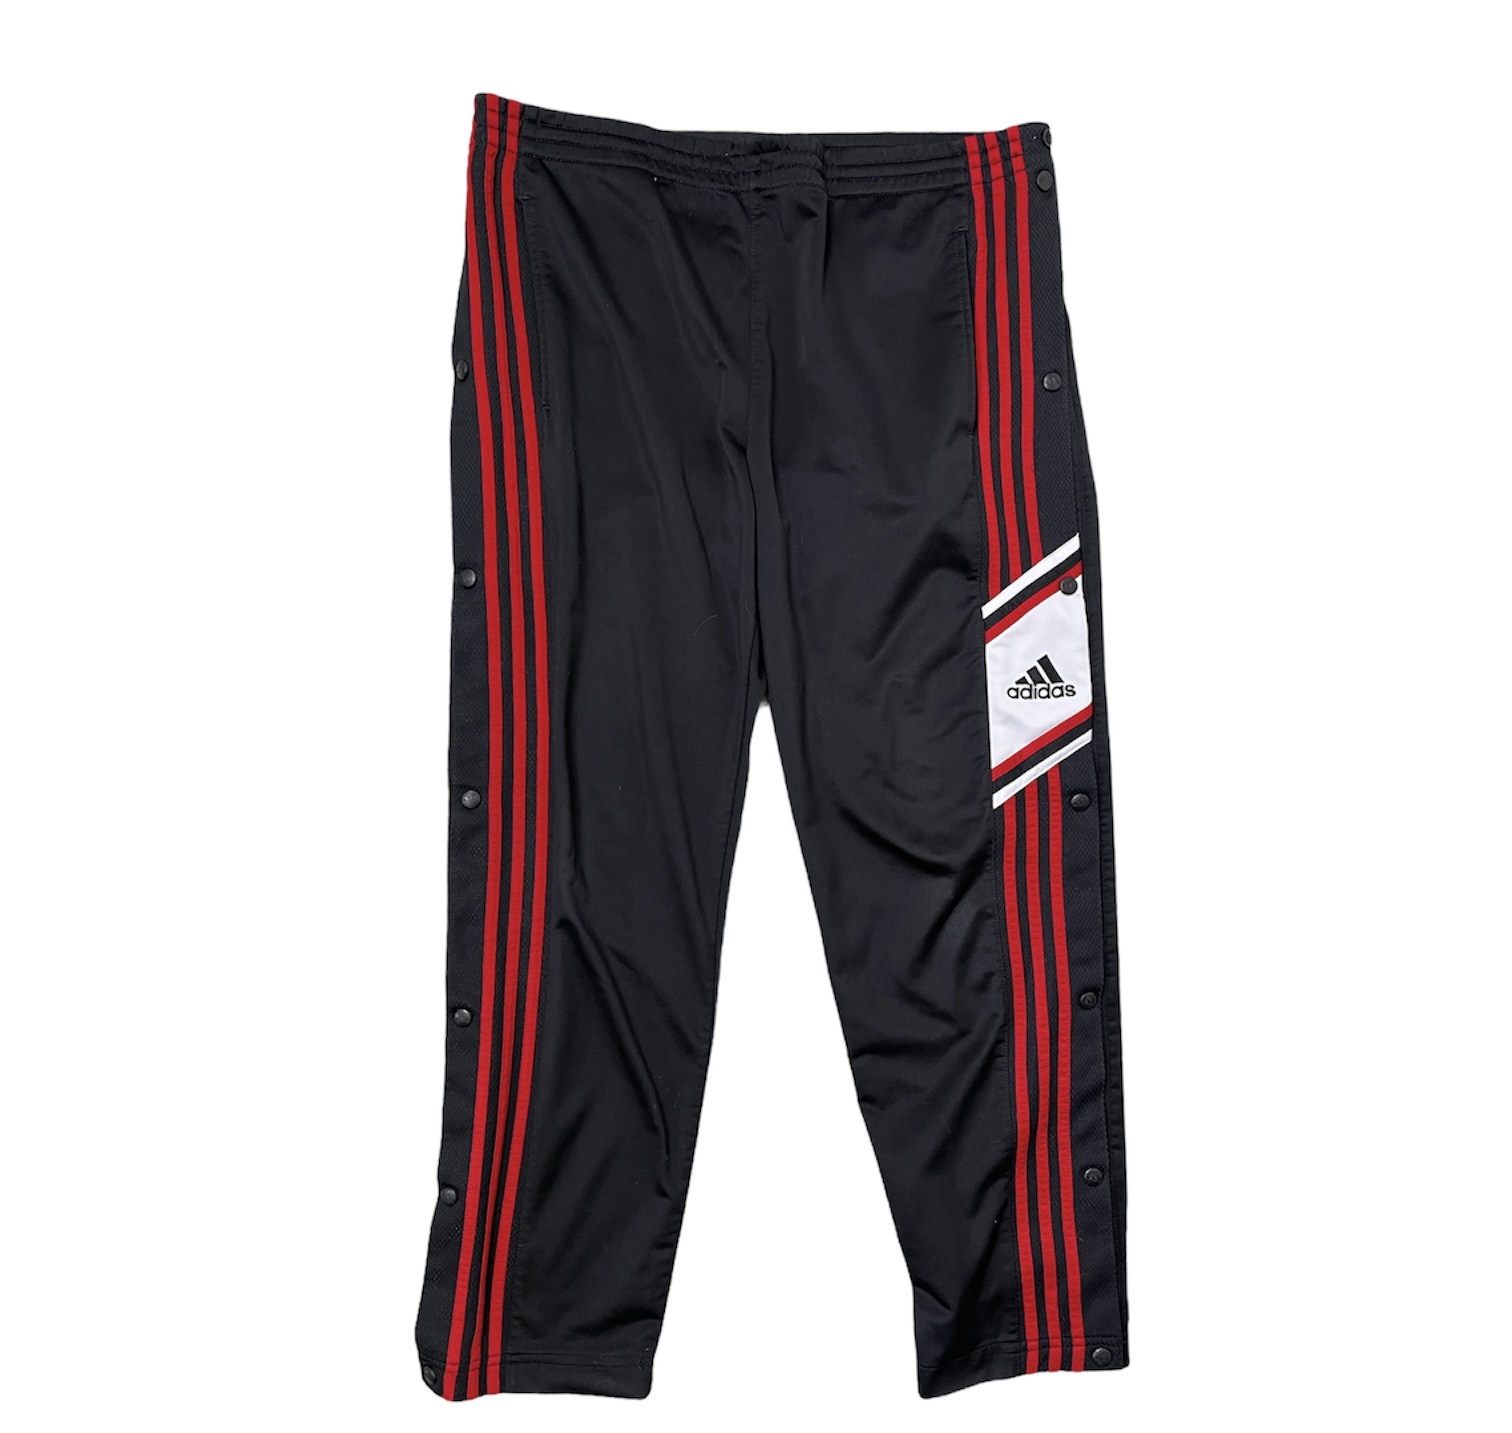 Pantalone tuta Adidas vintage da uomo nero con righe verticali rosse e bottoni neri ai lati e con logo Adidas nero su sfondo bianco sul lato sinistro, sopra le strisce